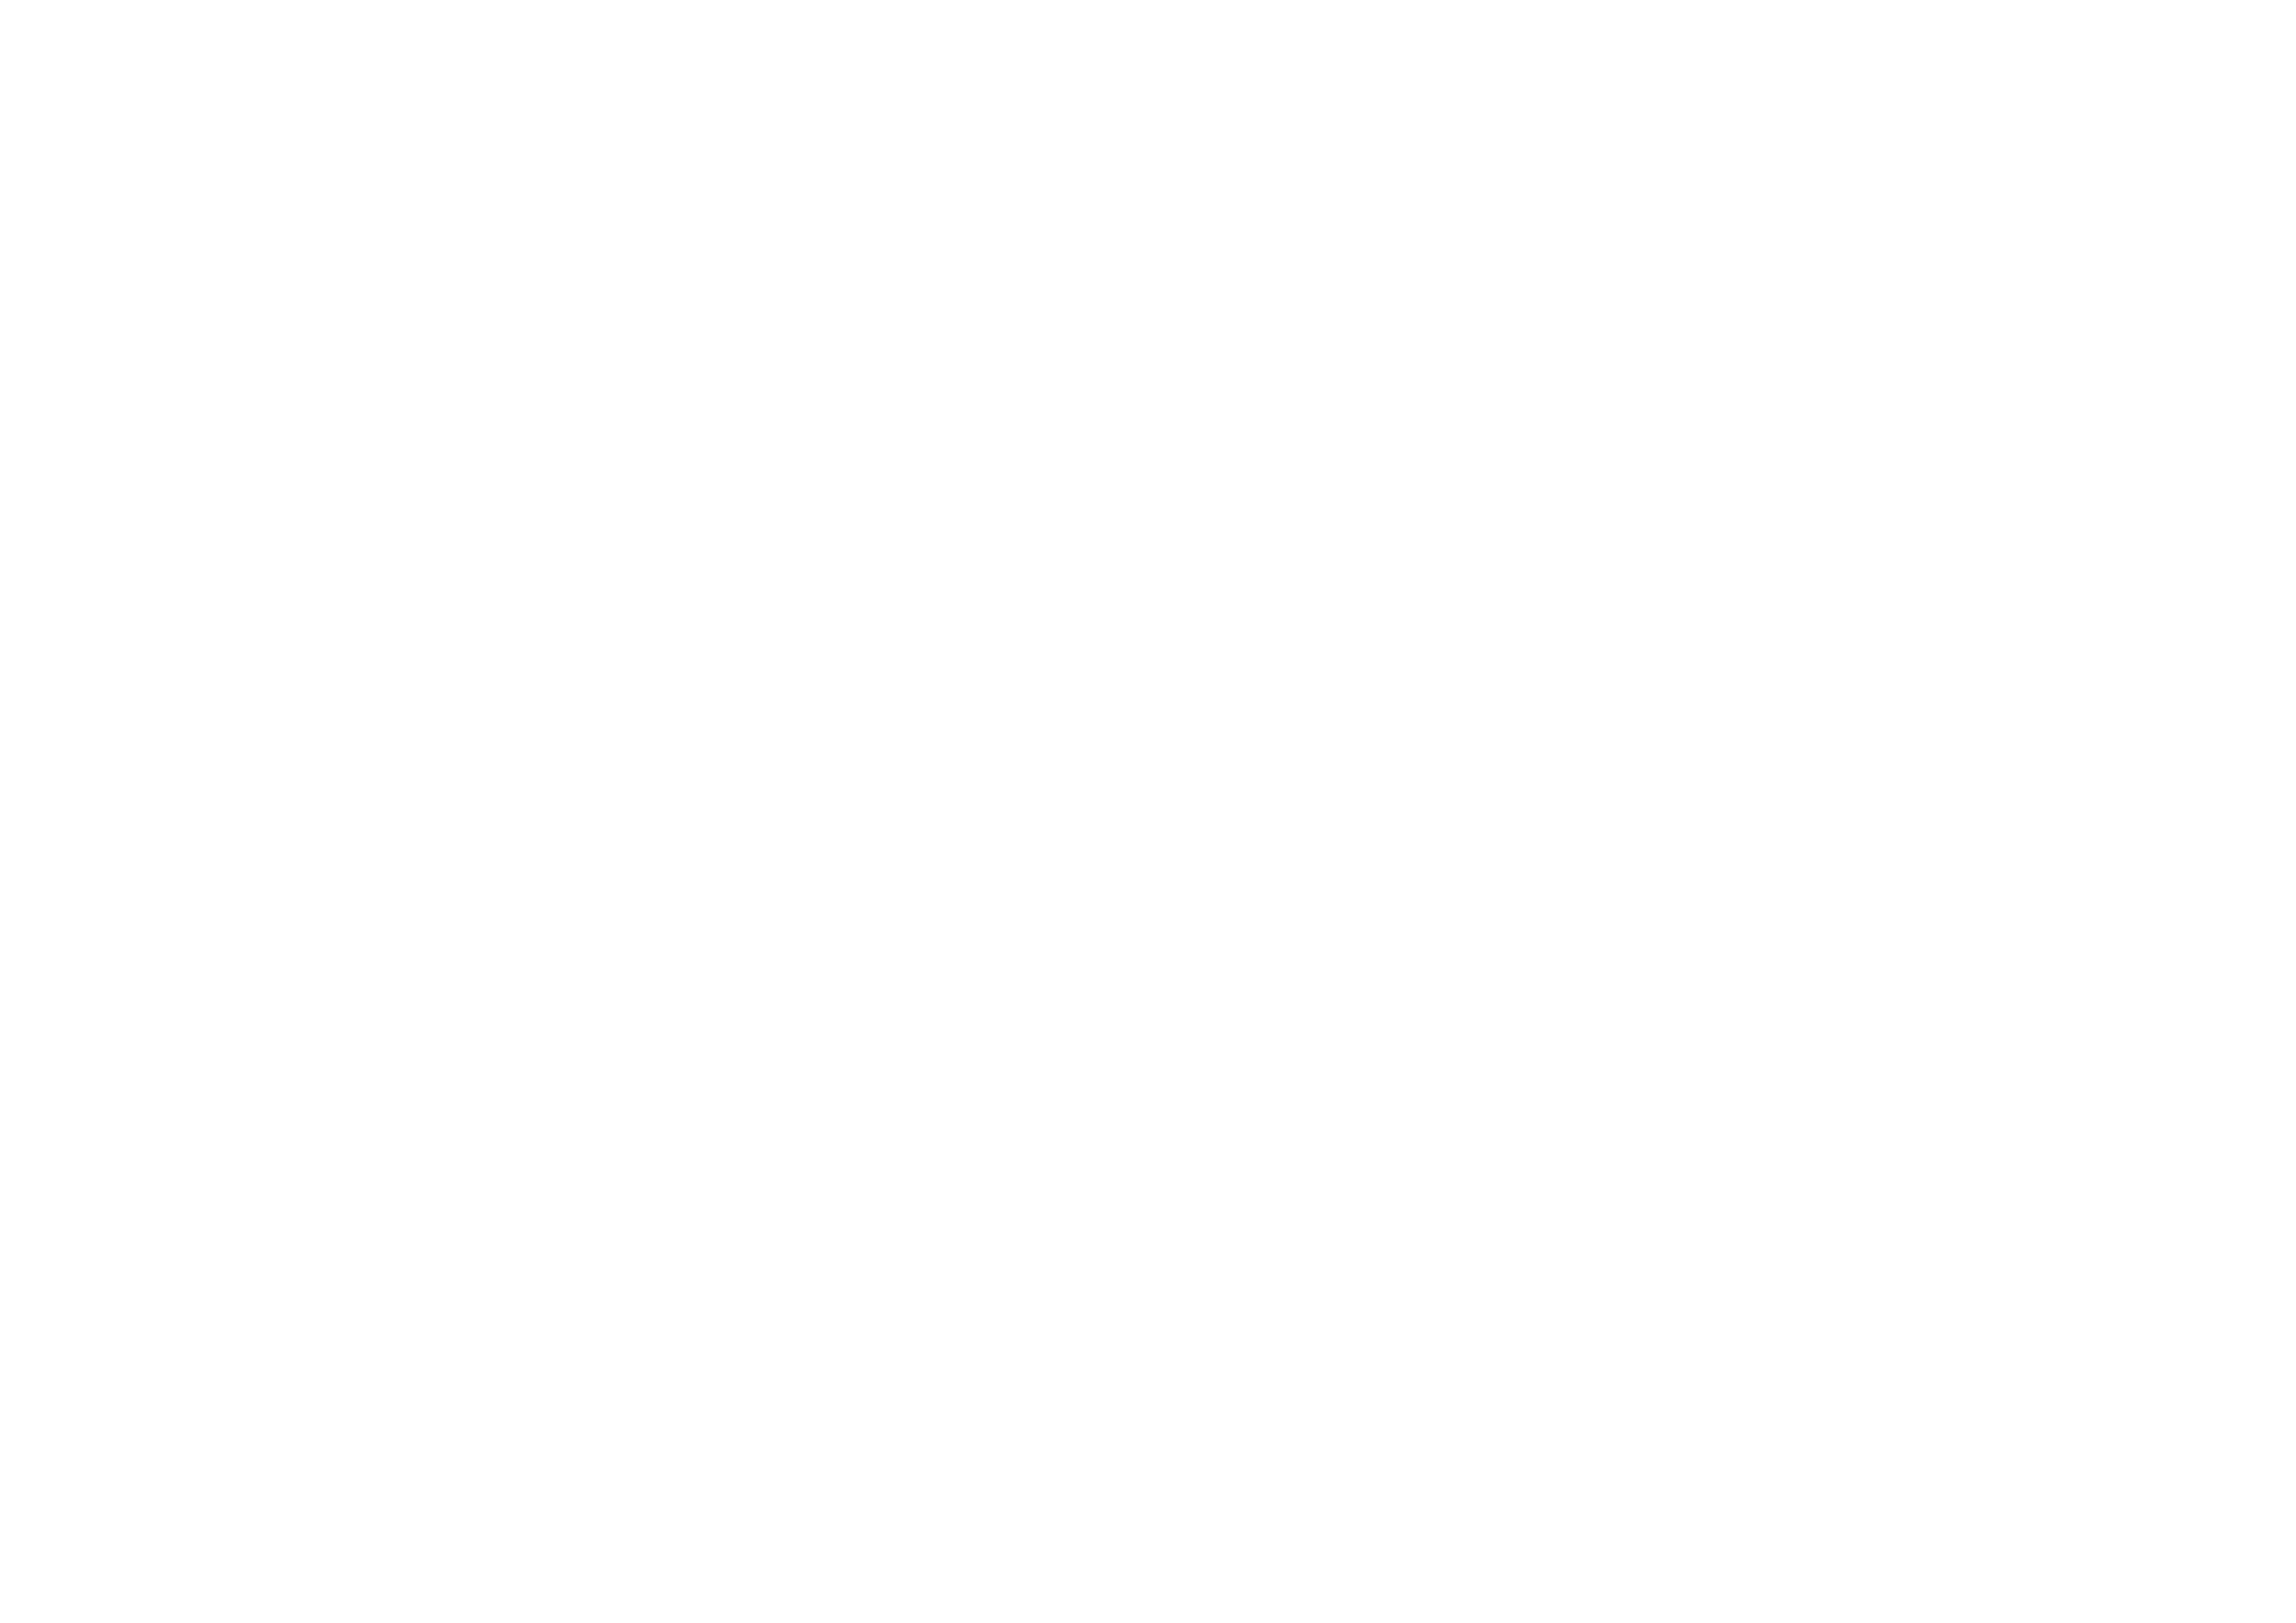 Margaret Selection Paris